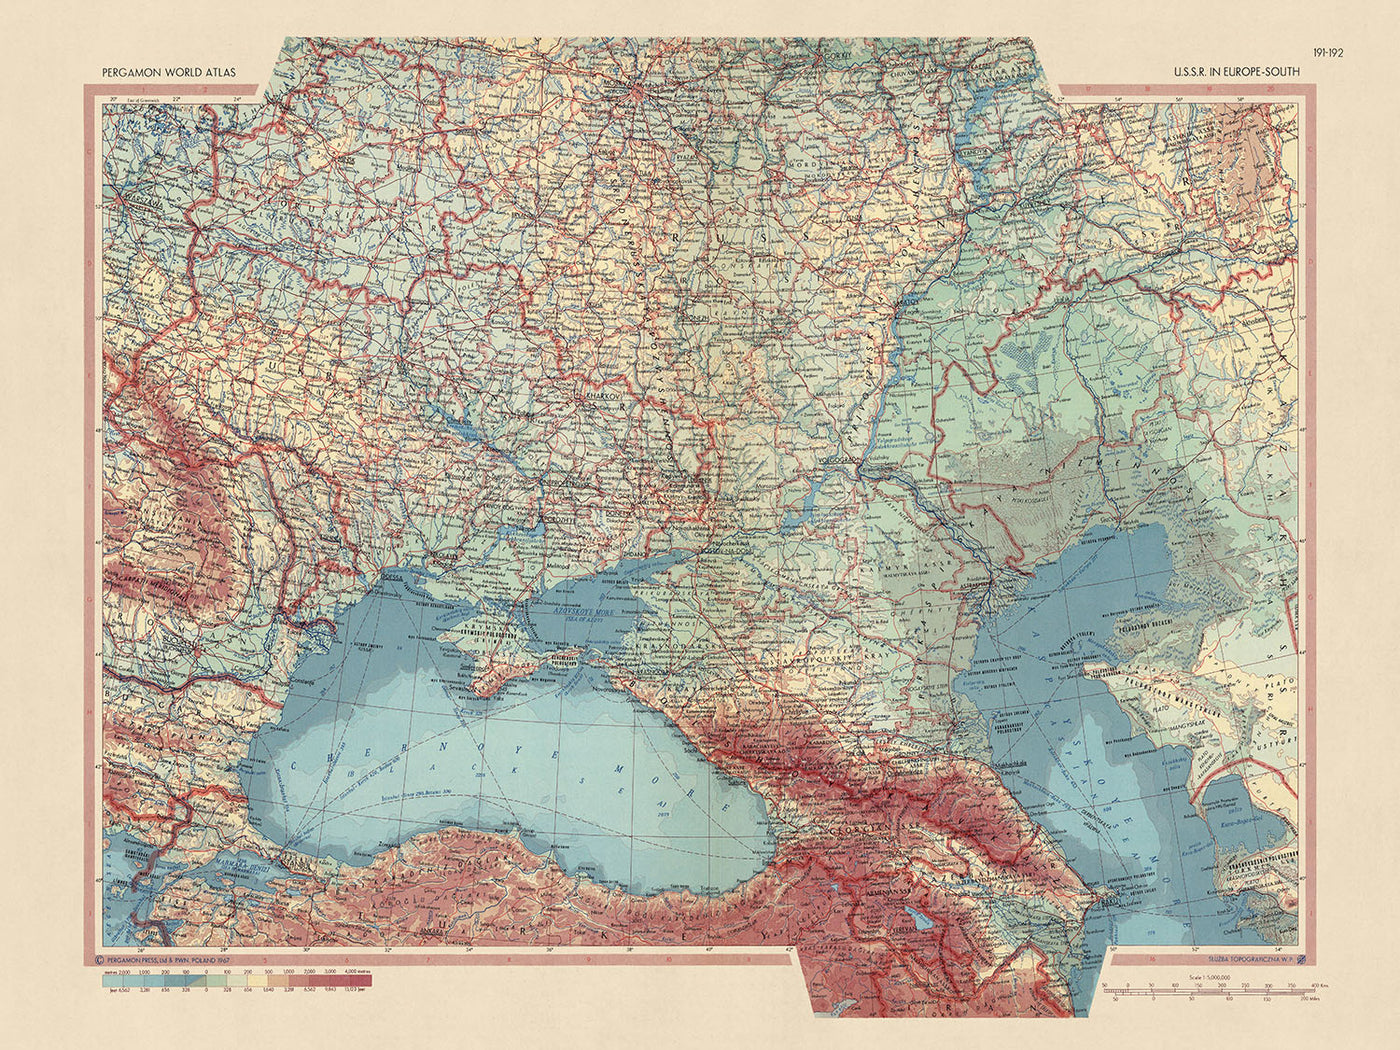 Alte Weltkarte der UdSSR in Europa – Süden vom polnischen Topographiedienst der Armee, 1967: Detaillierte politische und physische Karte der südlichen UdSSR und Osteuropas